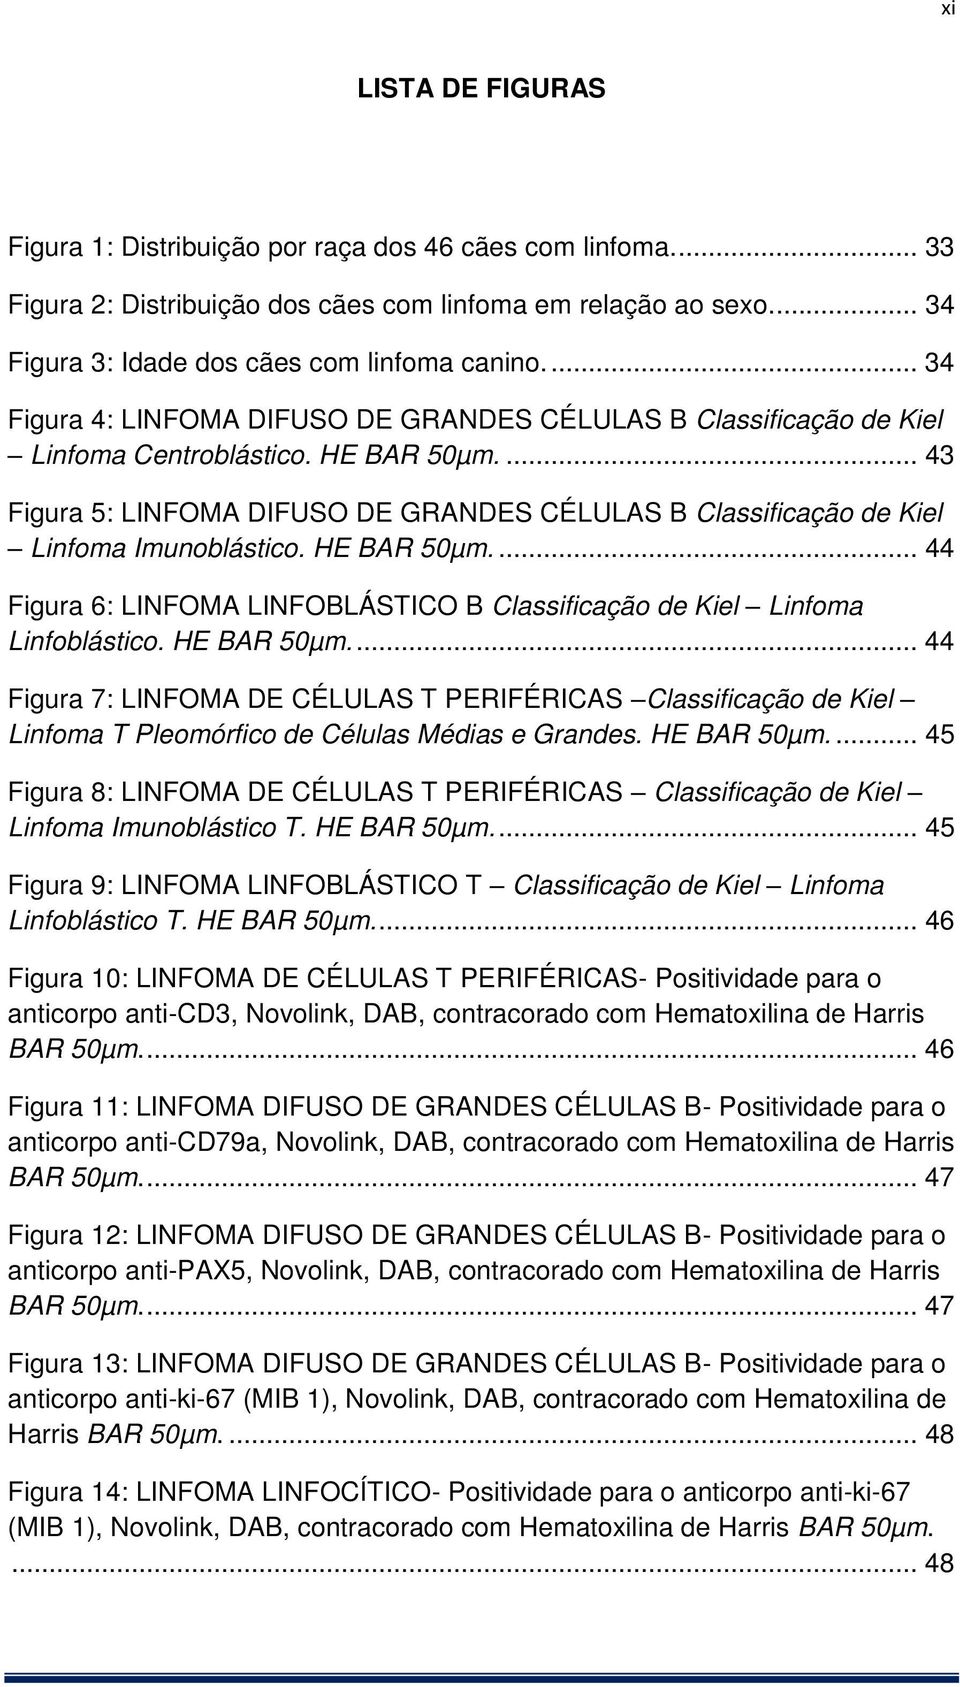 ... 43 Figura 5: LINFOMA DIFUSO DE GRANDES CÉLULAS B Classificação de Kiel Linfoma Imunoblástico. HE BAR 50µm.... 44 Figura 6: LINFOMA LINFOBLÁSTICO B Classificação de Kiel Linfoma Linfoblástico.